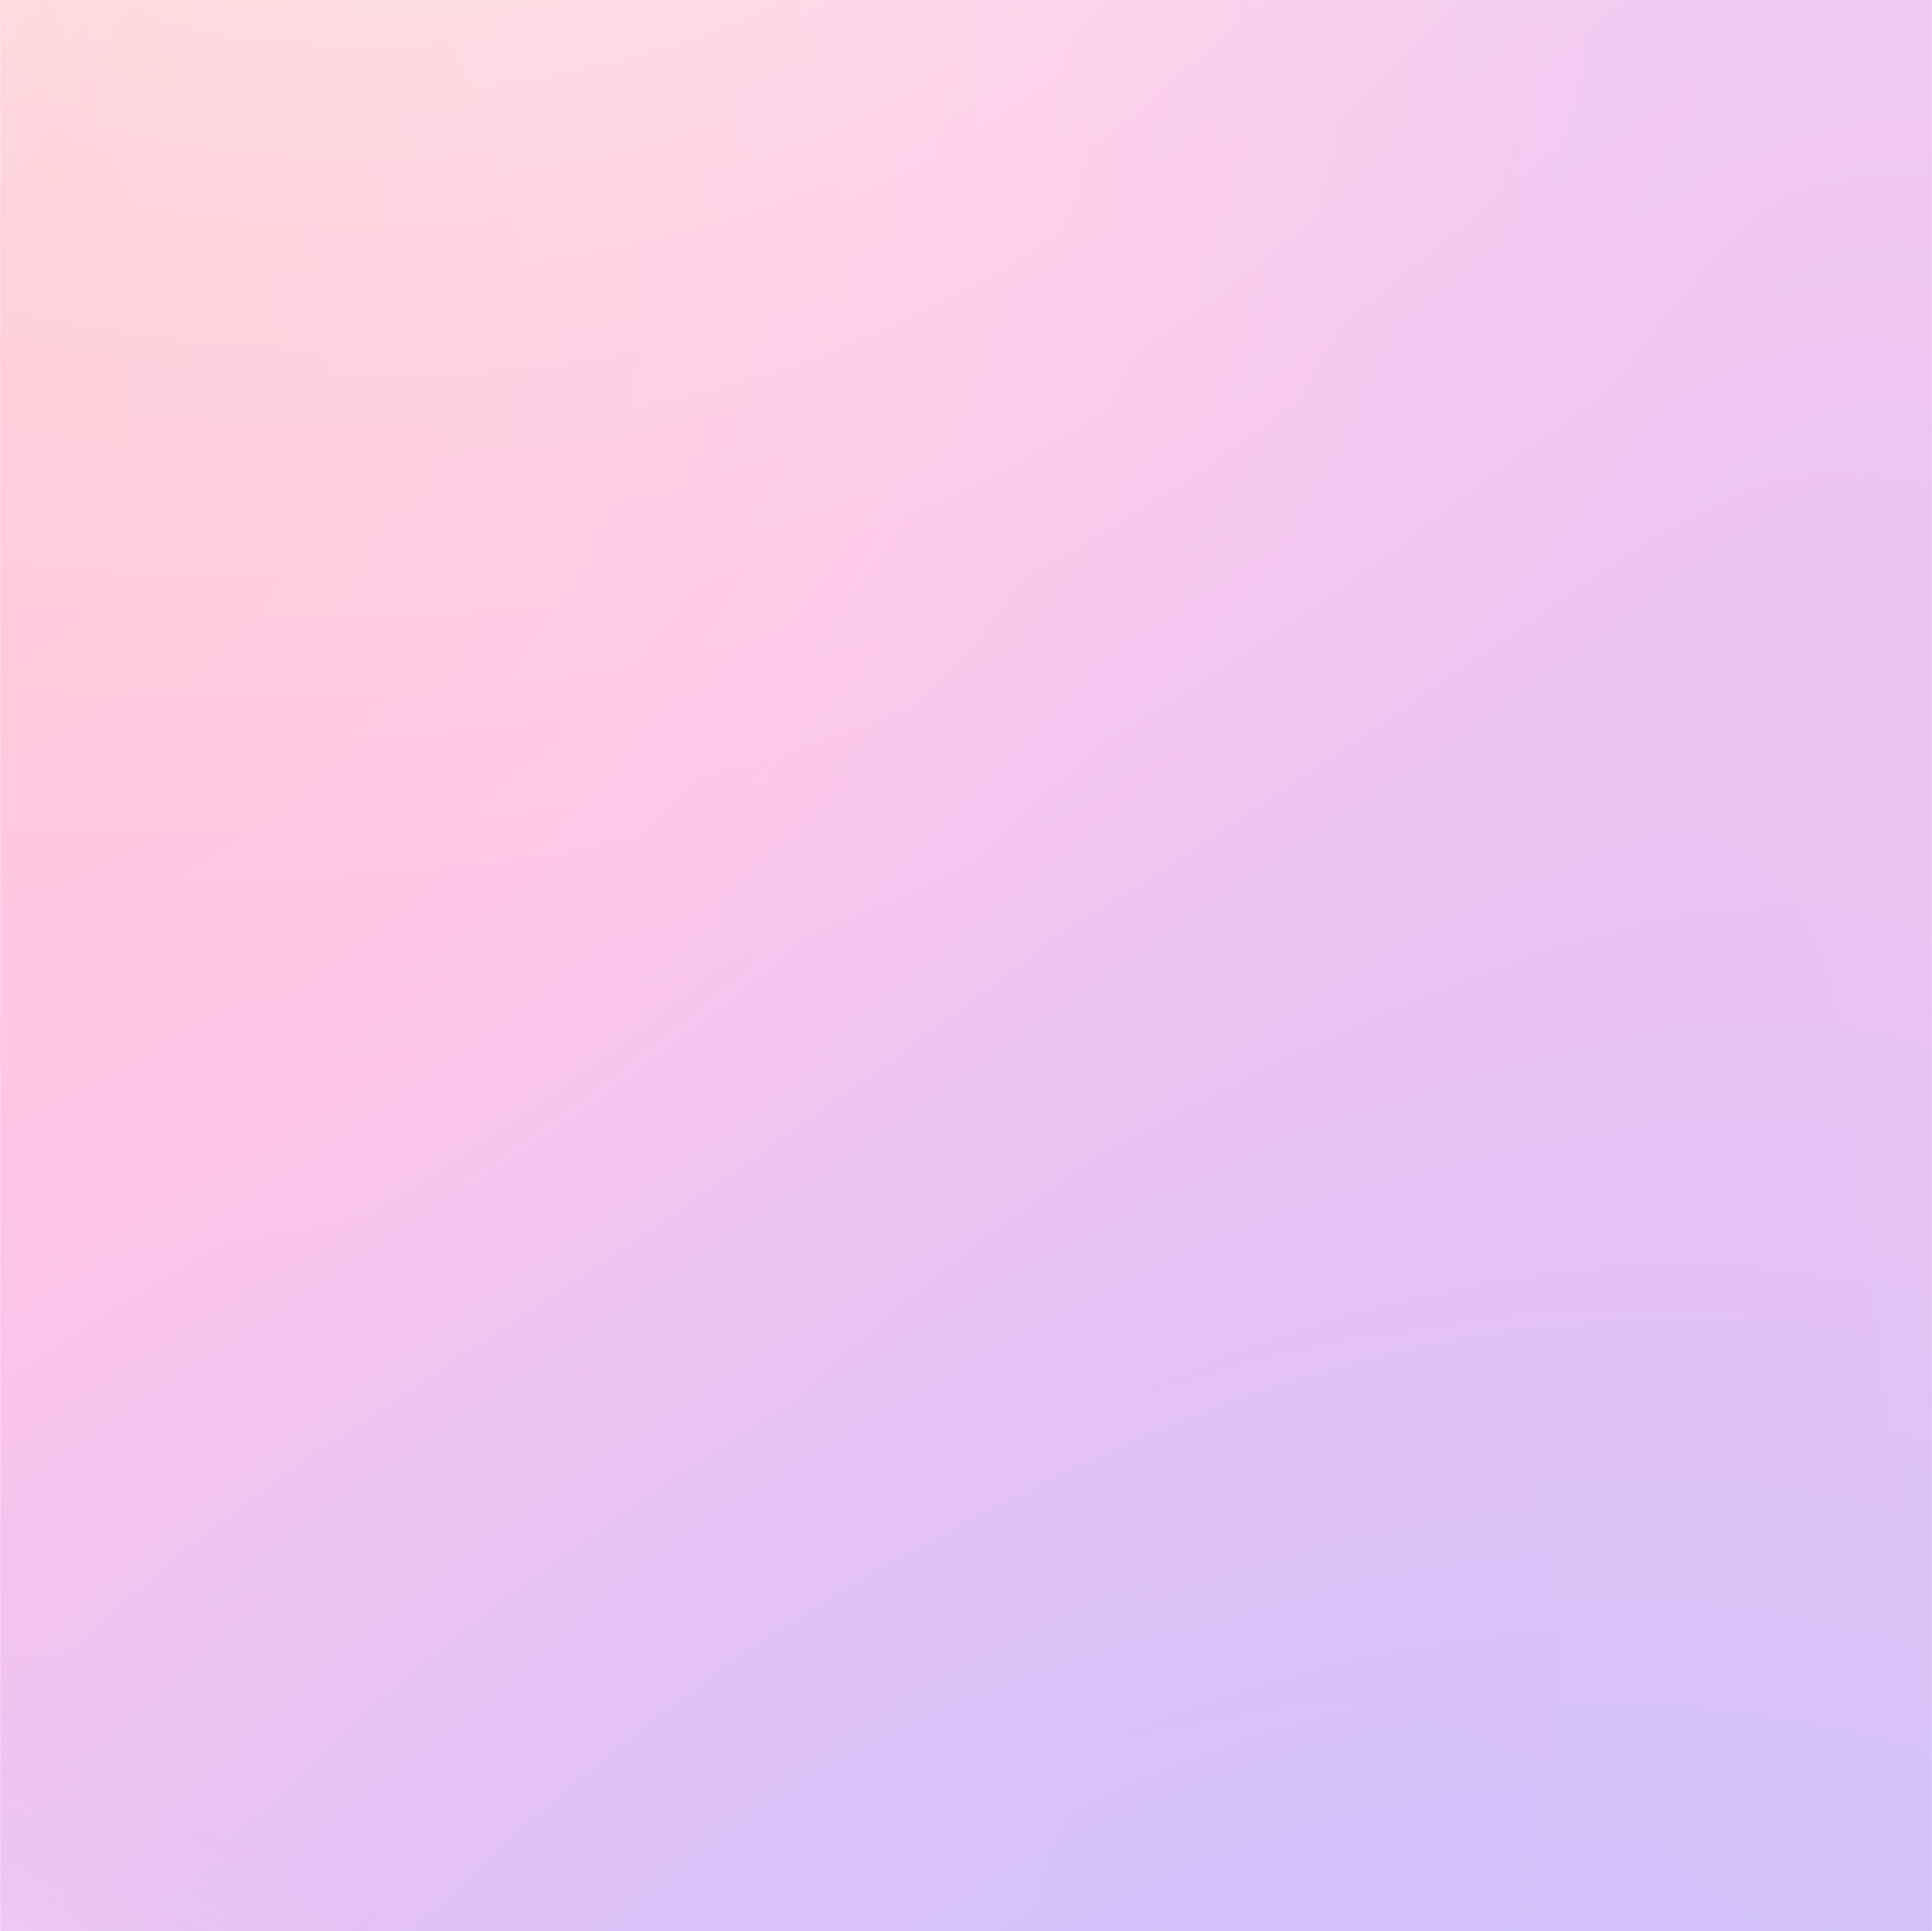 Blur Soft Gradient Background